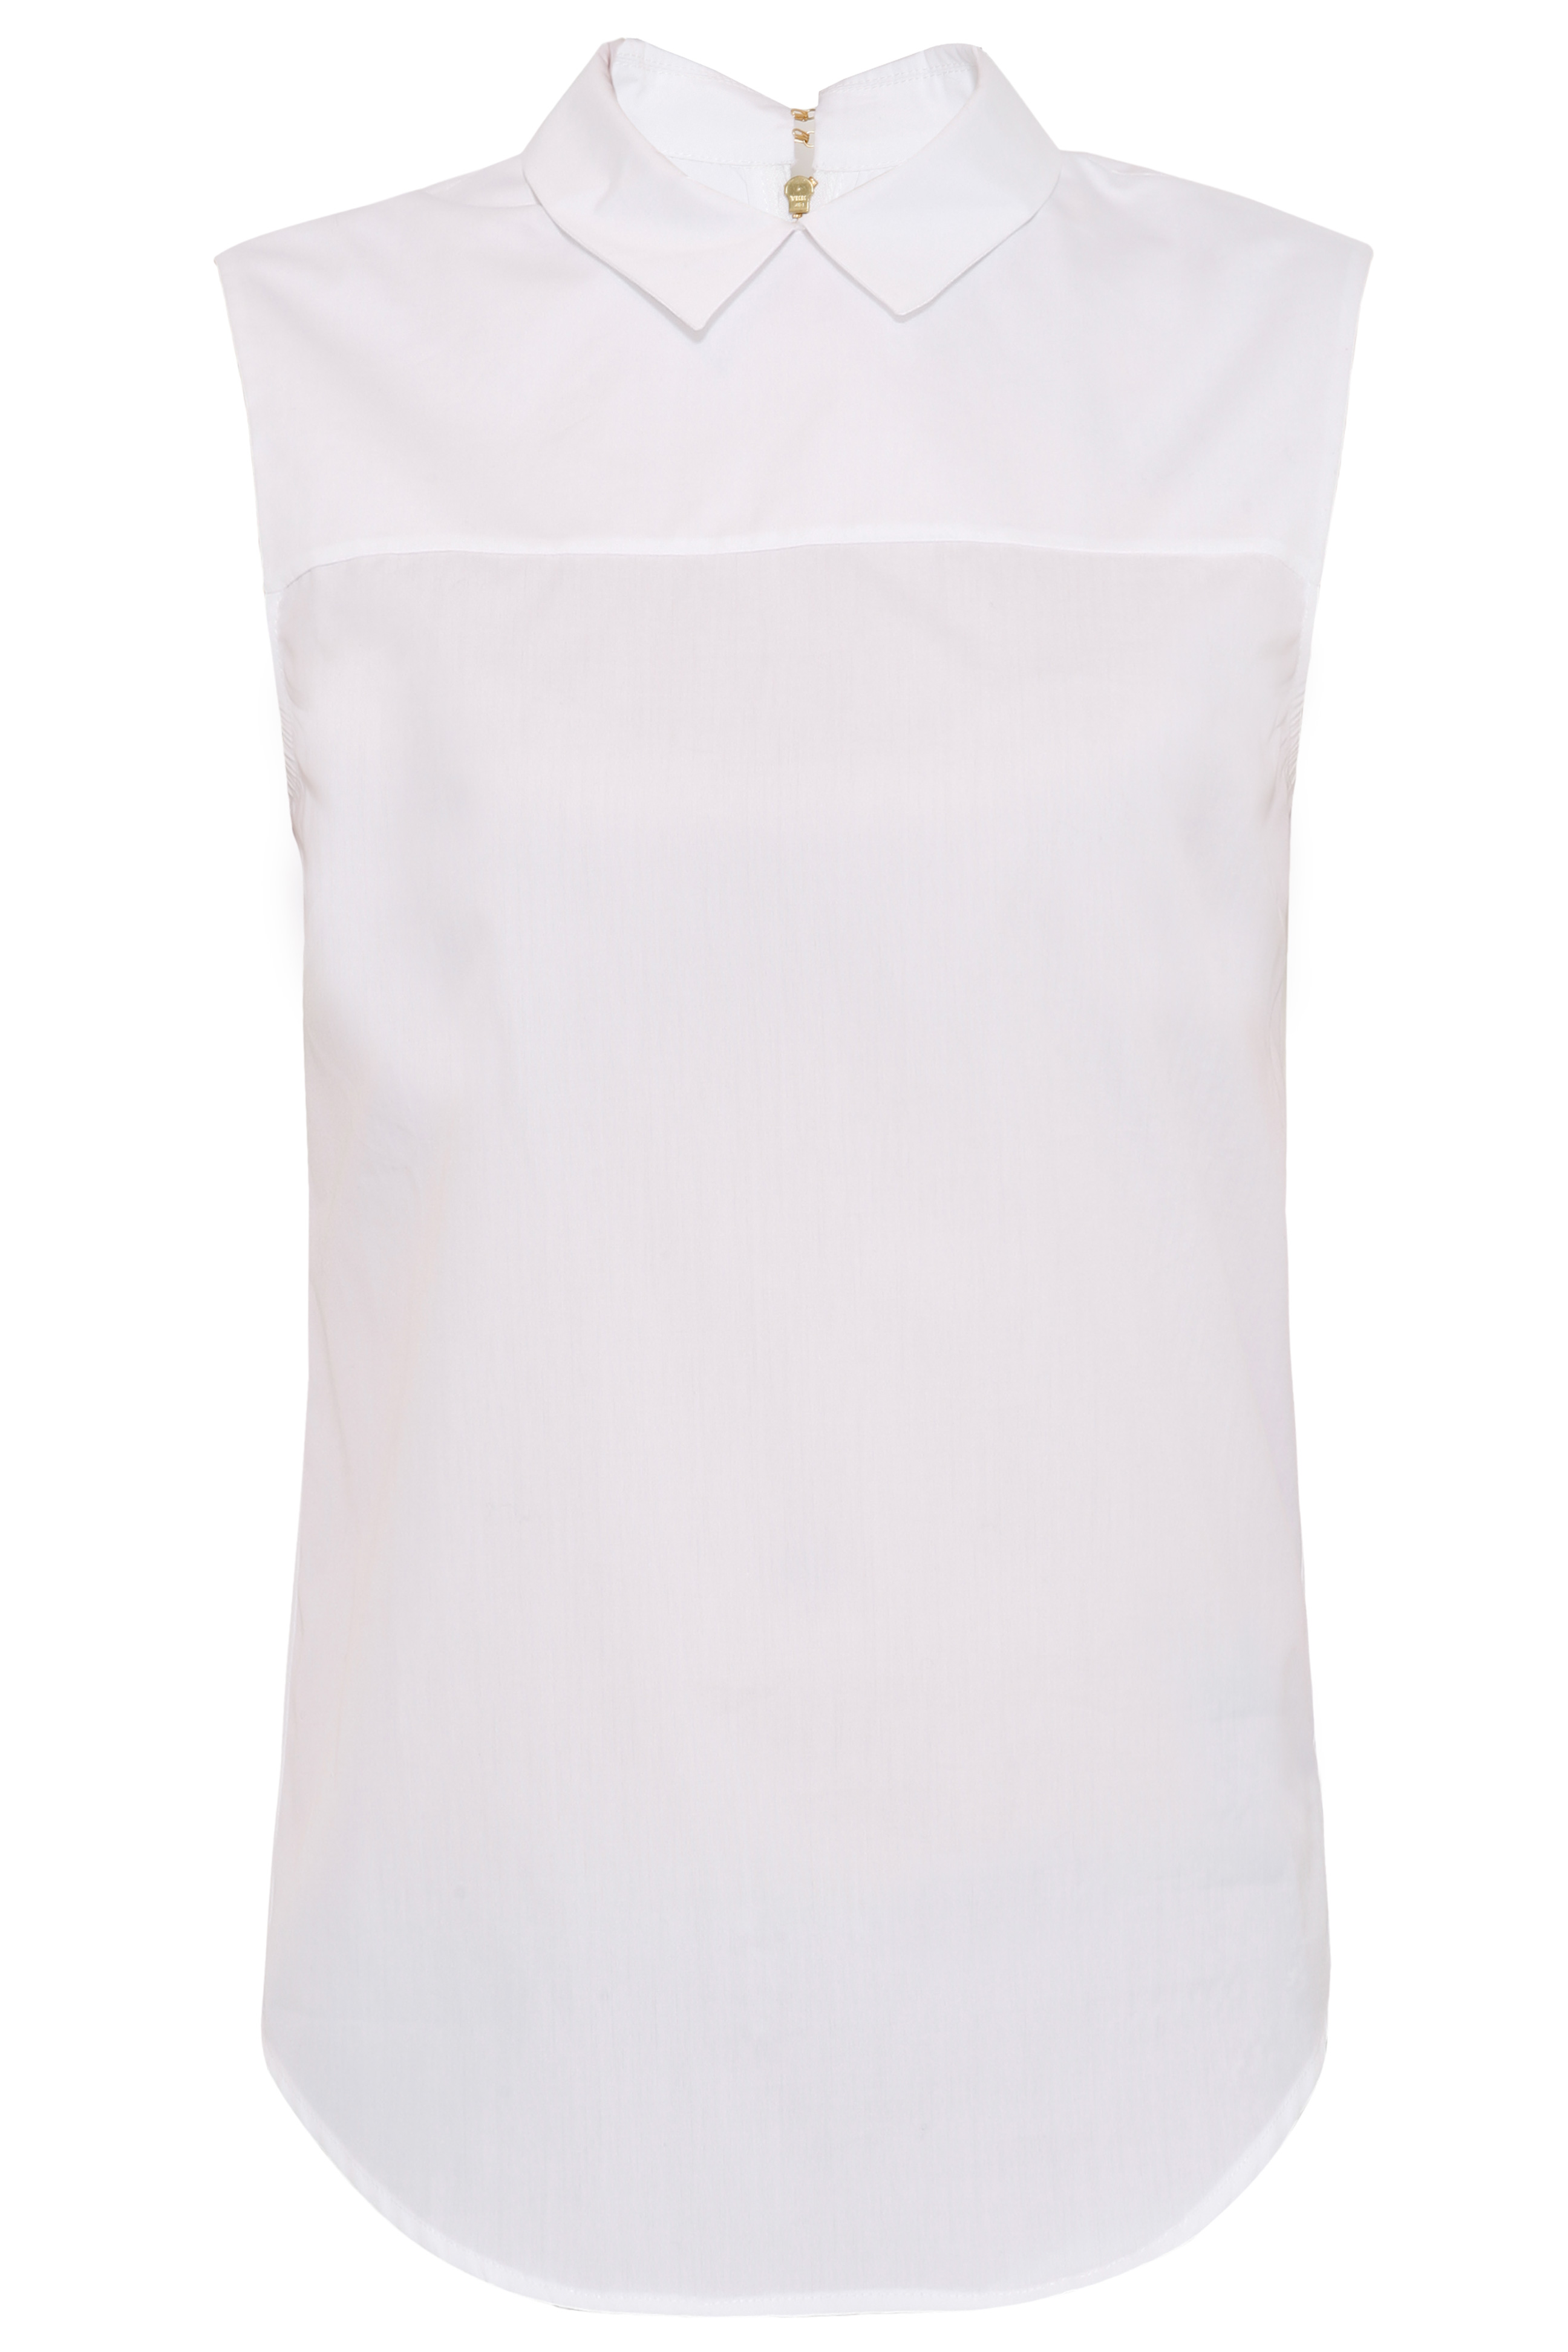 Victoria beckham Zip Back Shirt in White | Lyst